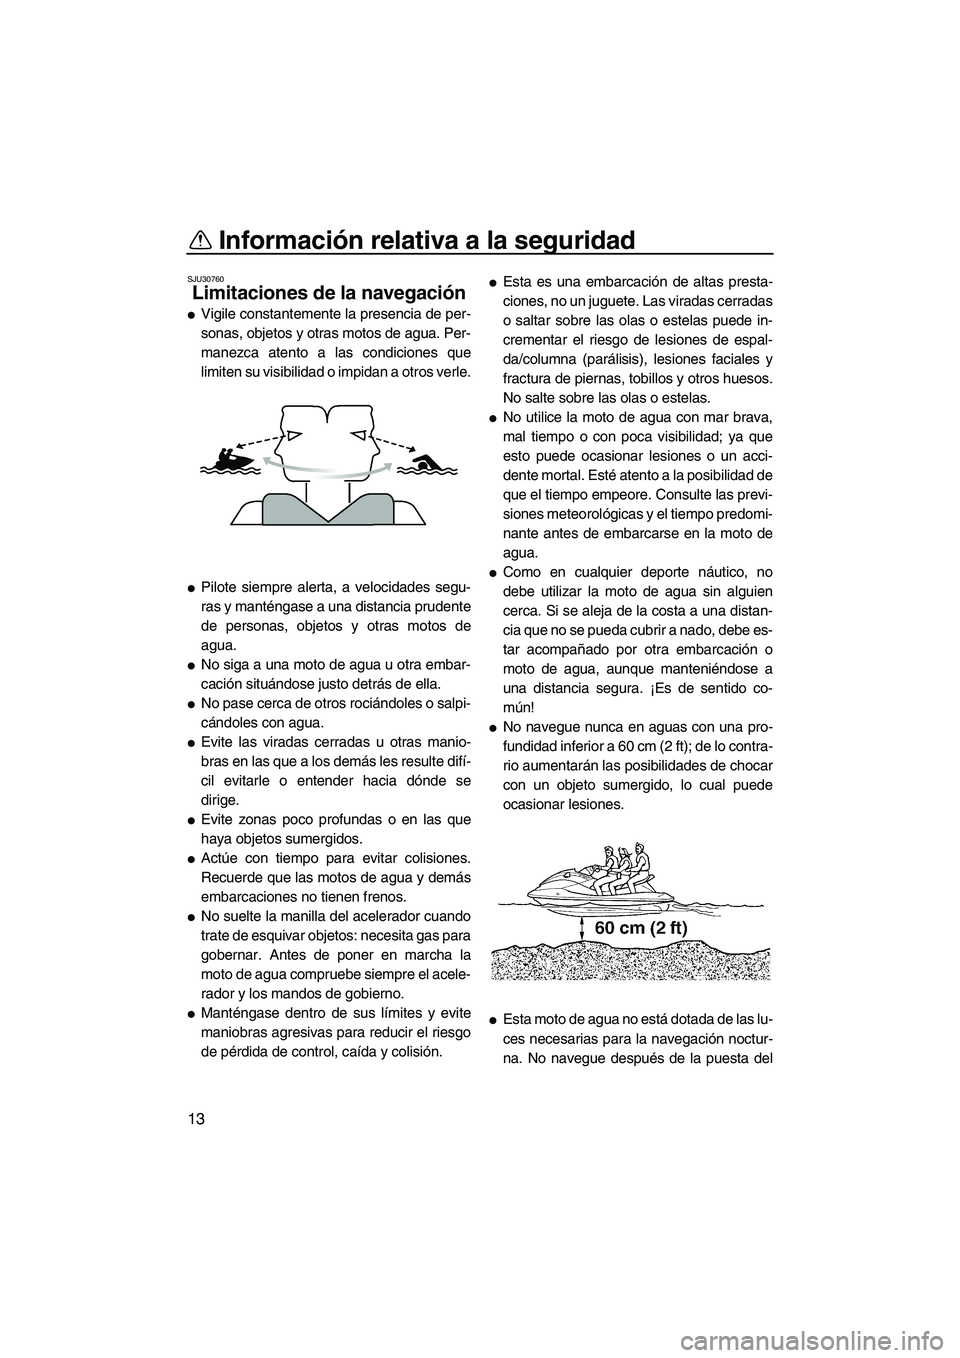 YAMAHA VX 2007  Manuale de Empleo (in Spanish) Información relativa a la seguridad
13
SJU30760
Limitaciones de la navegación 
Vigile constantemente la presencia de per-
sonas, objetos y otras motos de agua. Per-
manezca atento a las condiciones